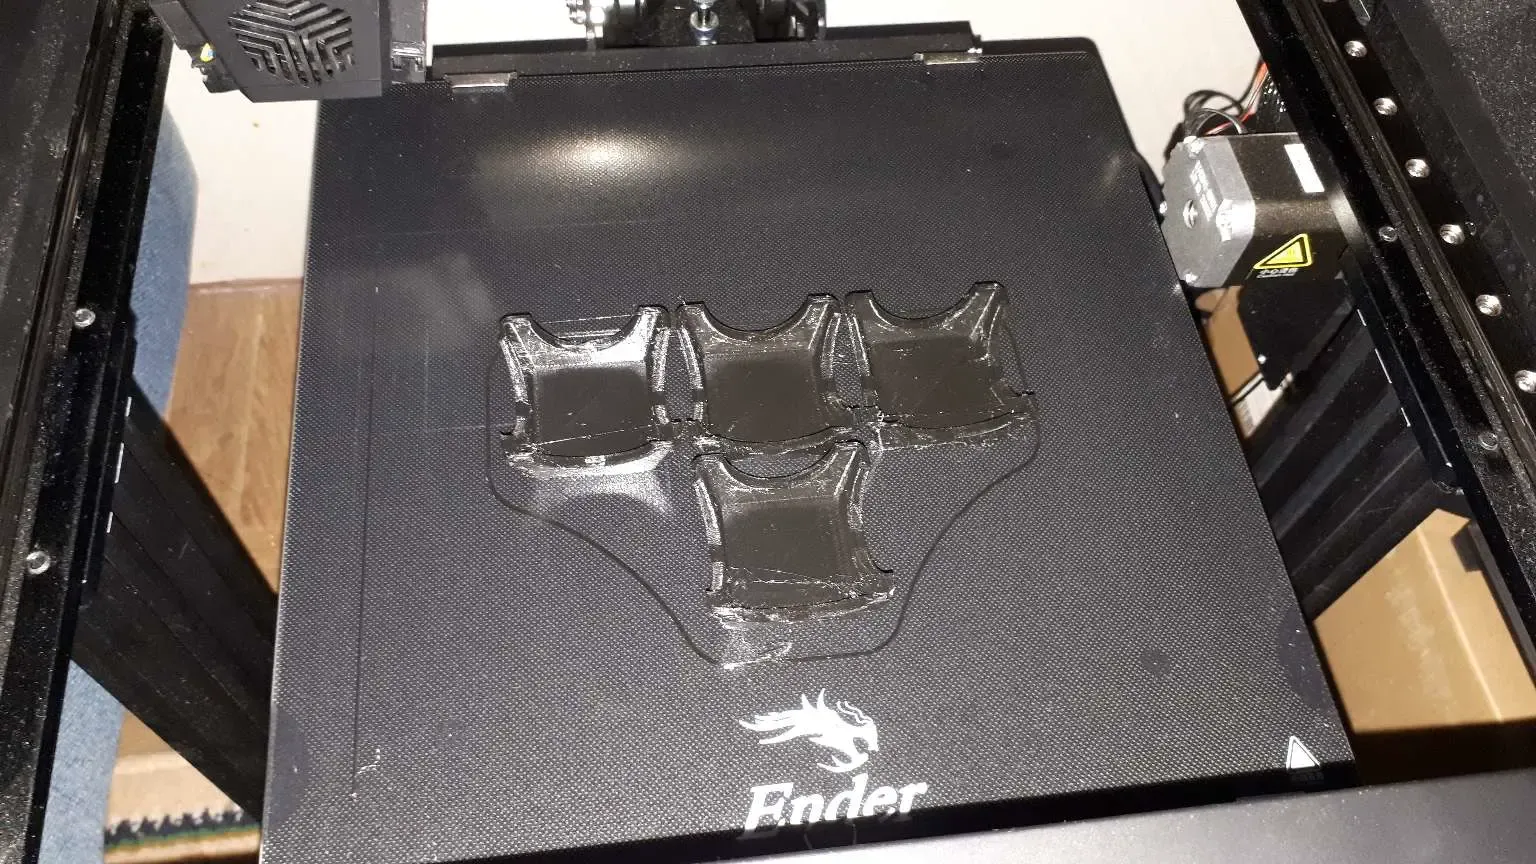 Ender-7 printer feet stand